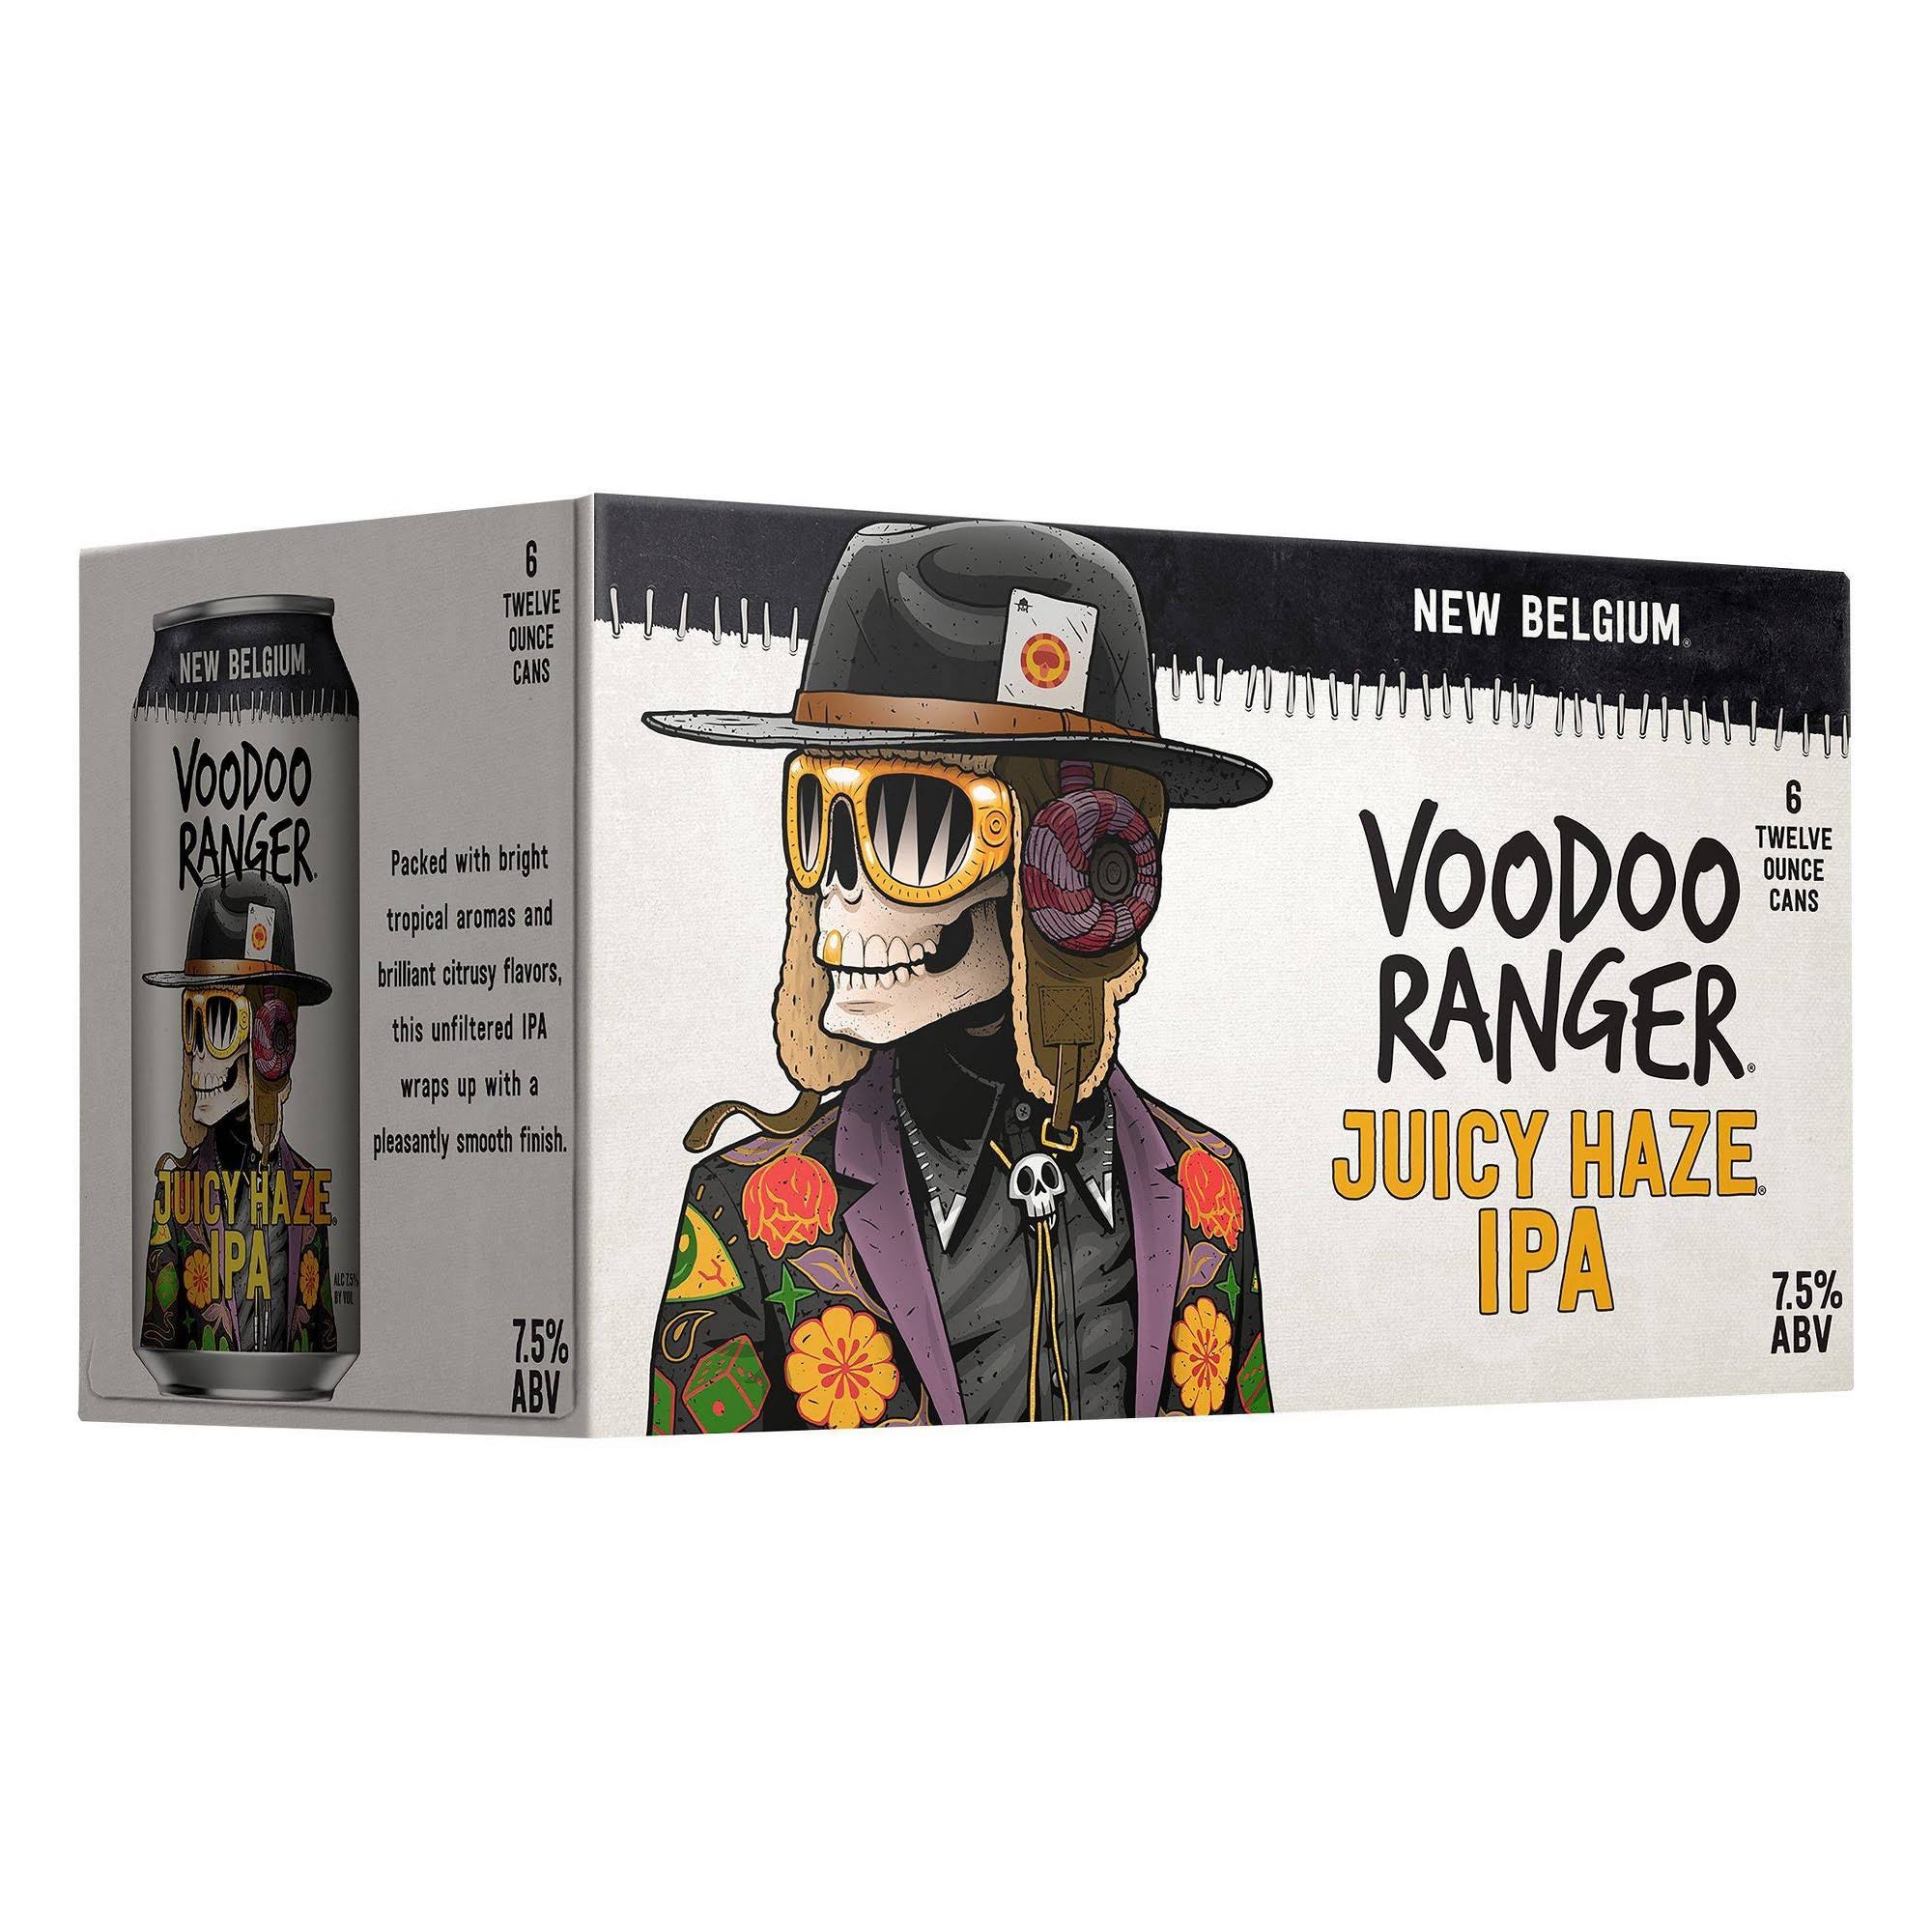 New Belgium Voodoo Ranger Beer, Juicy Haze IPA - 6 pack, 12 oz cans